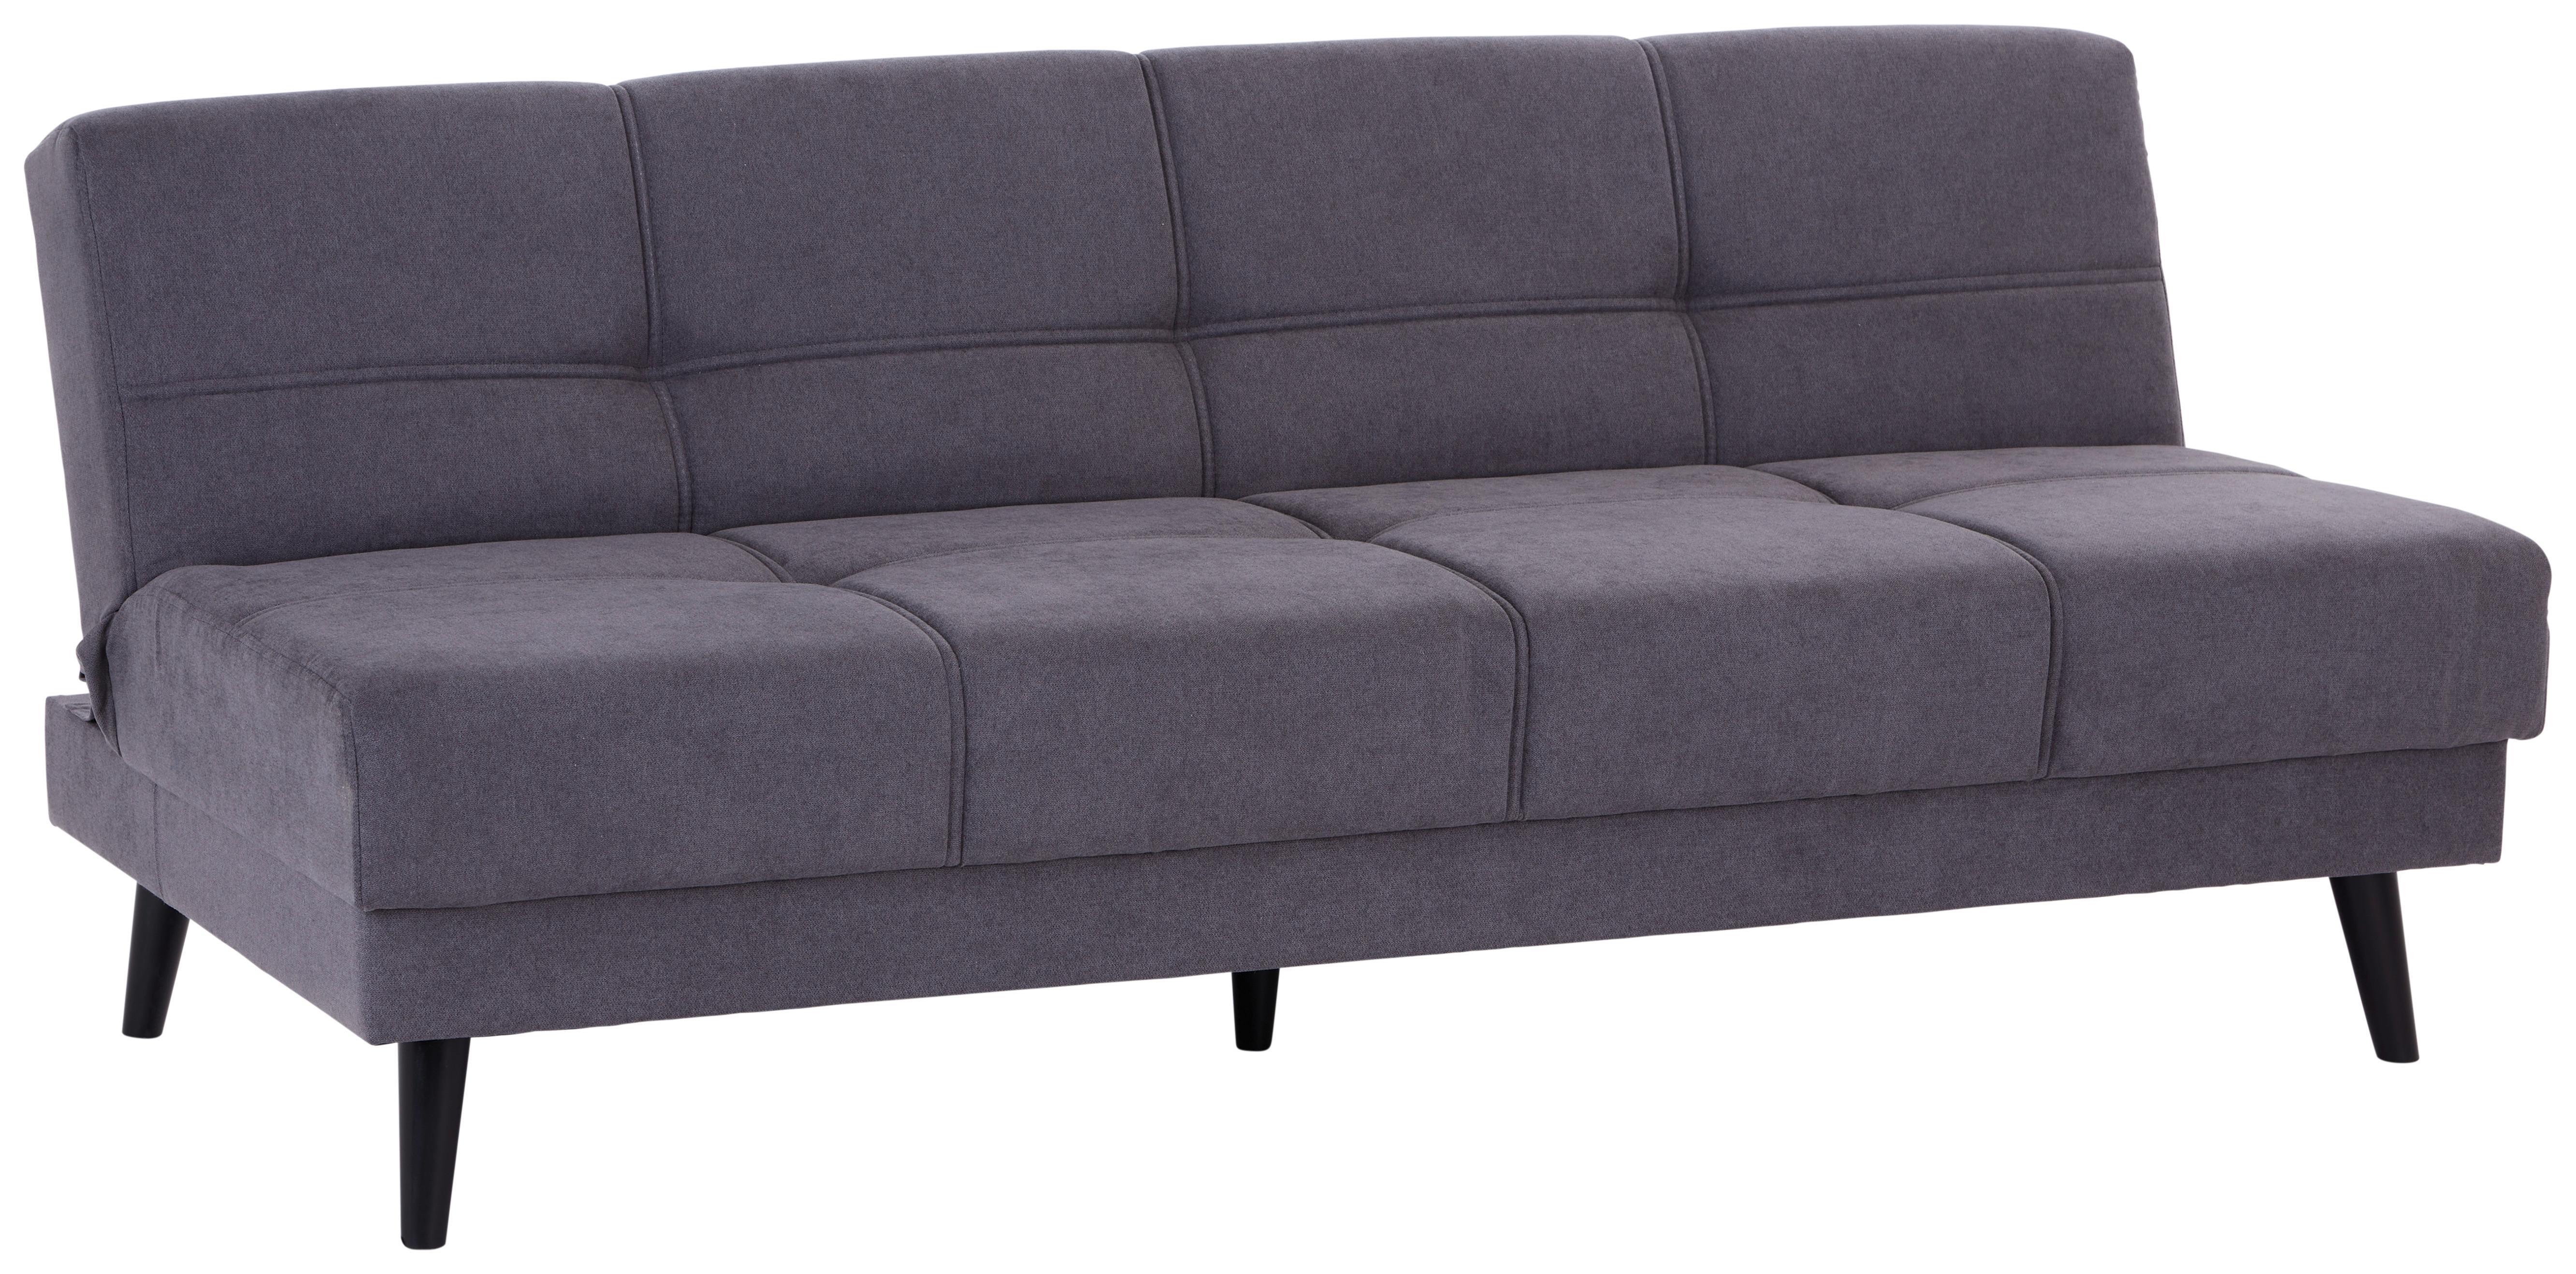 3-Sitzer-Sofa + Schlaffunktion Muffin Anthrazit, Beine Massiv - Anthrazit/Schwarz, MODERN, Textil (192/80/100cm)